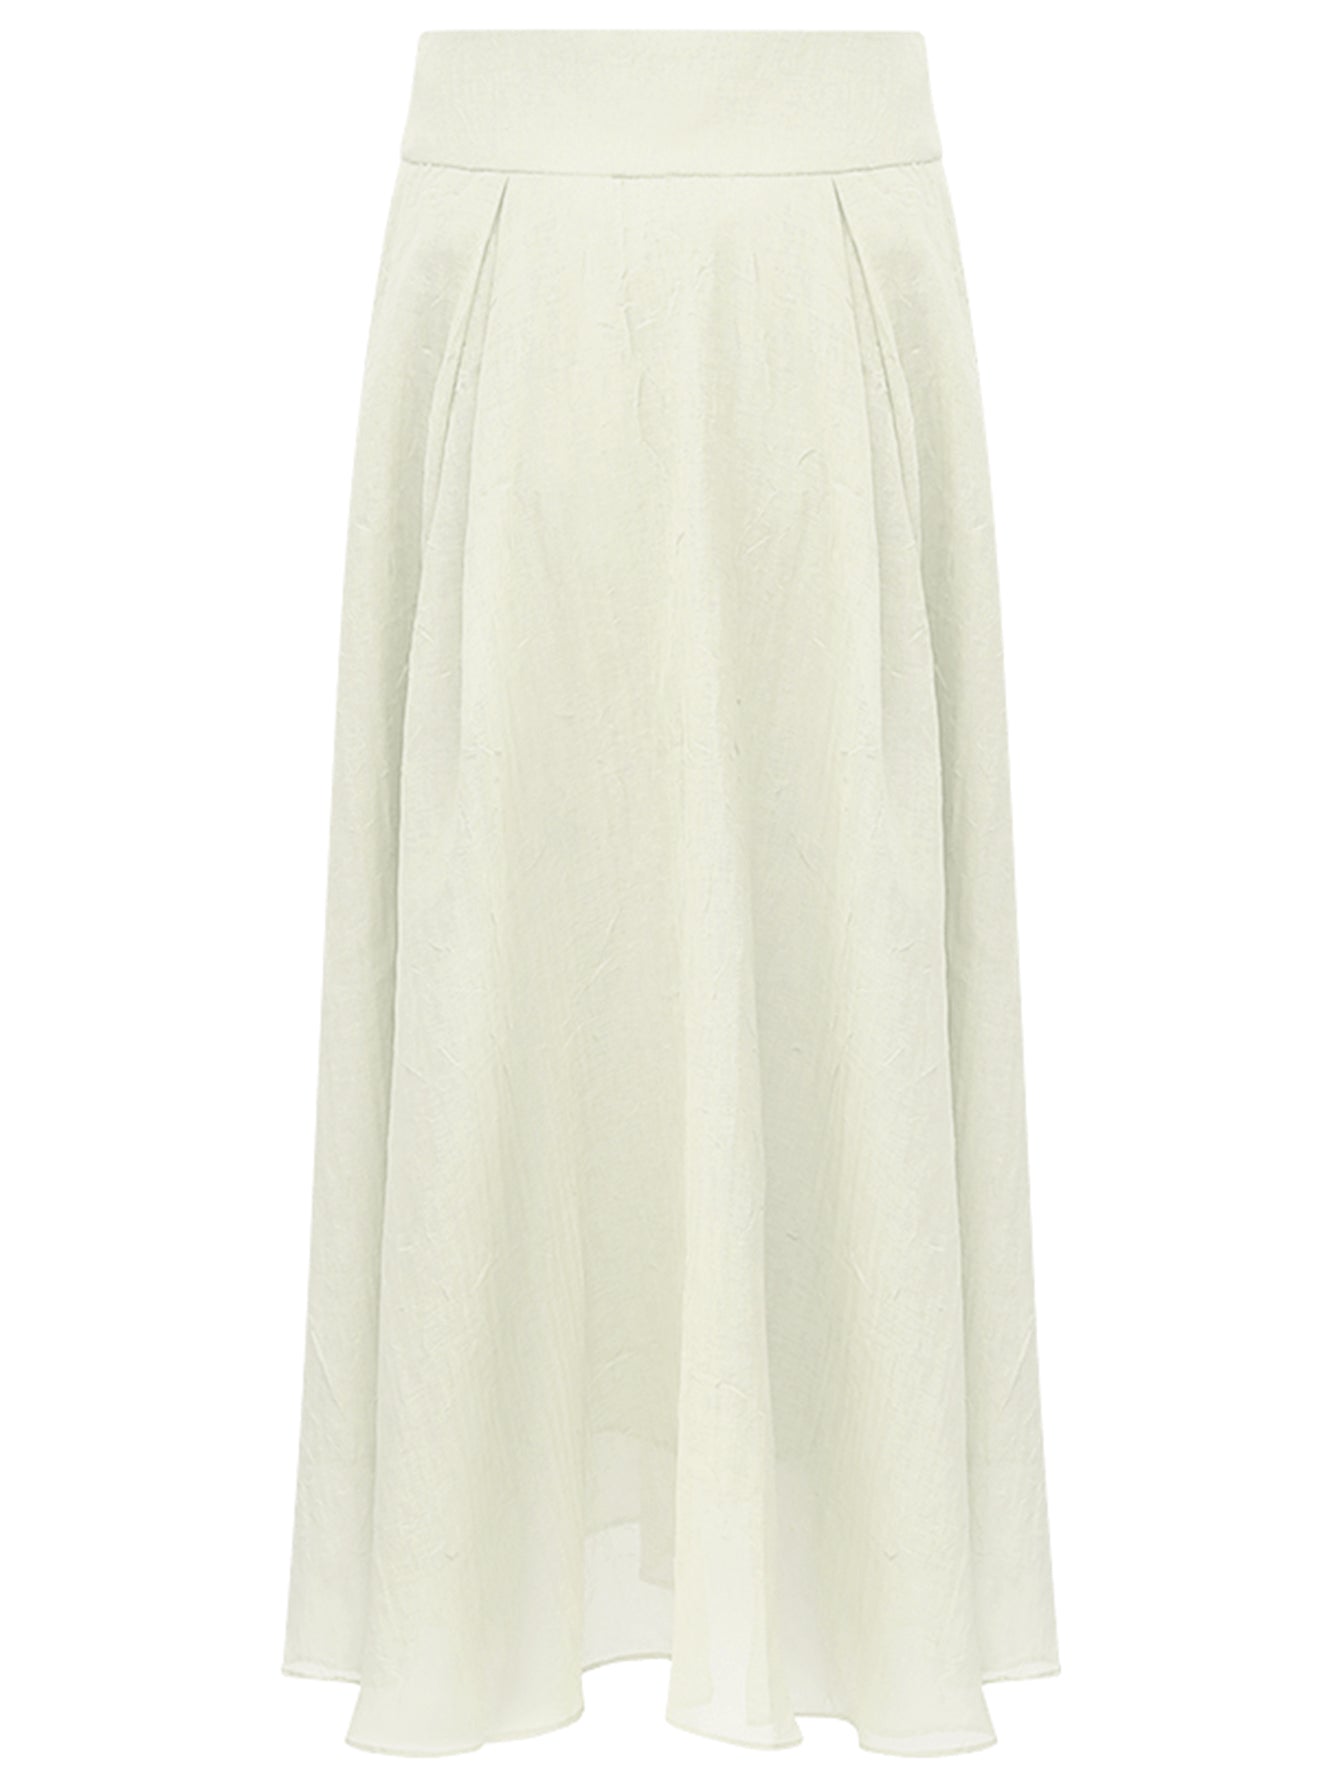 aesthetic-full-length-airy-multi-layered-umbrella-skirt_all_white_4.jpg